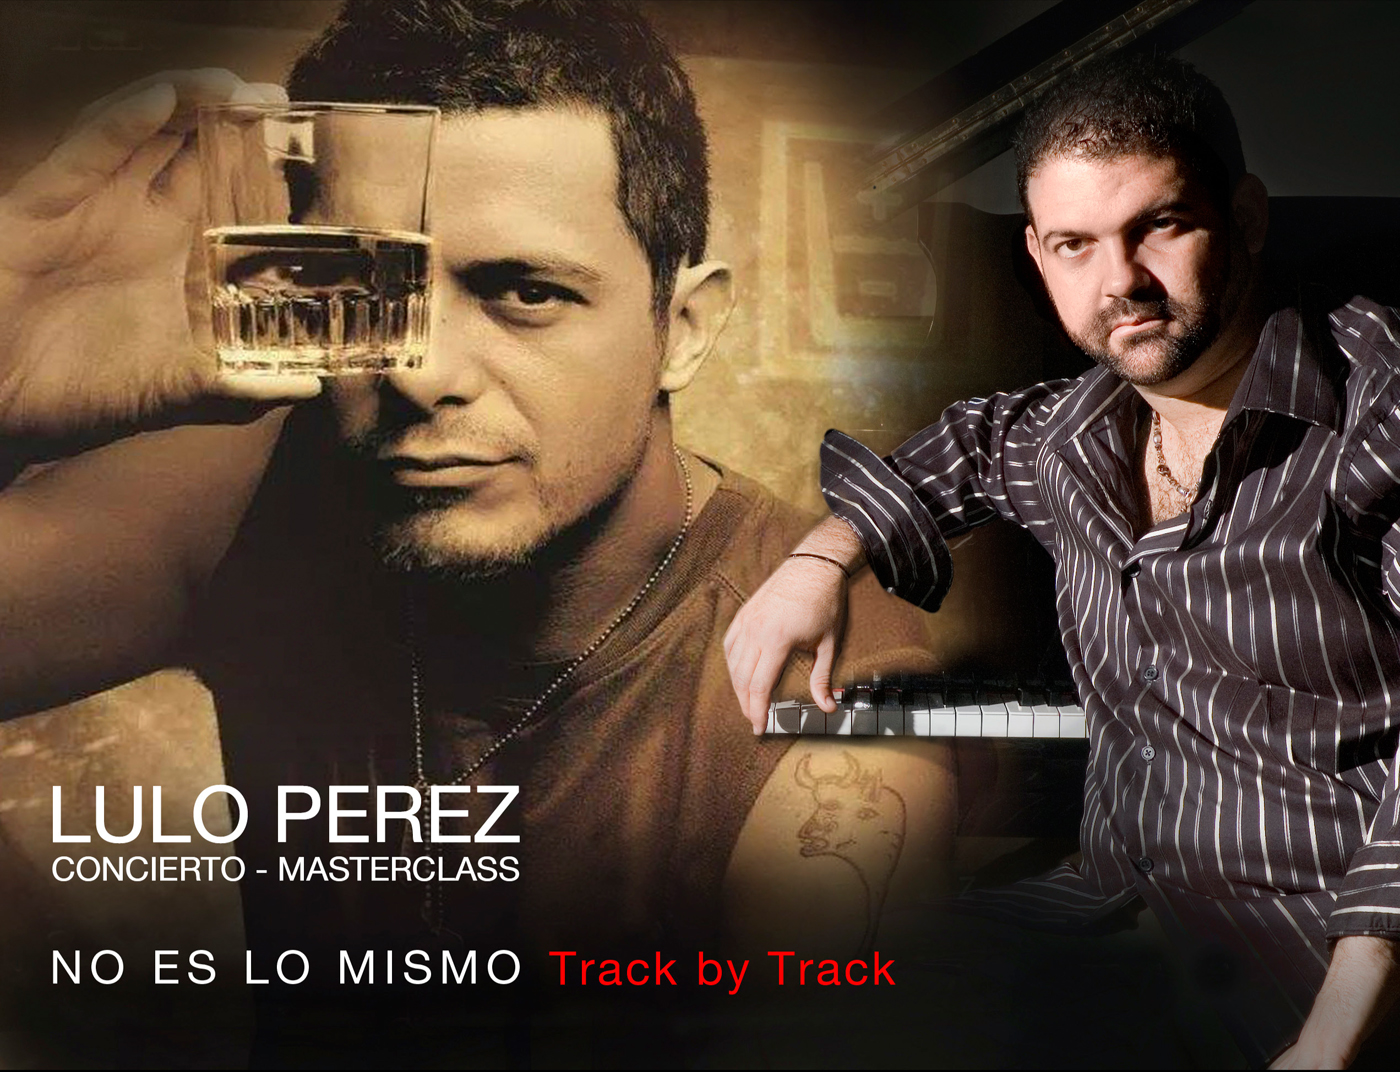 CONCIERTO-MASTERCLASS de LULO PÉREZ<BR>
Productor de ALEJANDRO SANZ<br>
<br>
NO ES LO MISMO    Tracky by Track